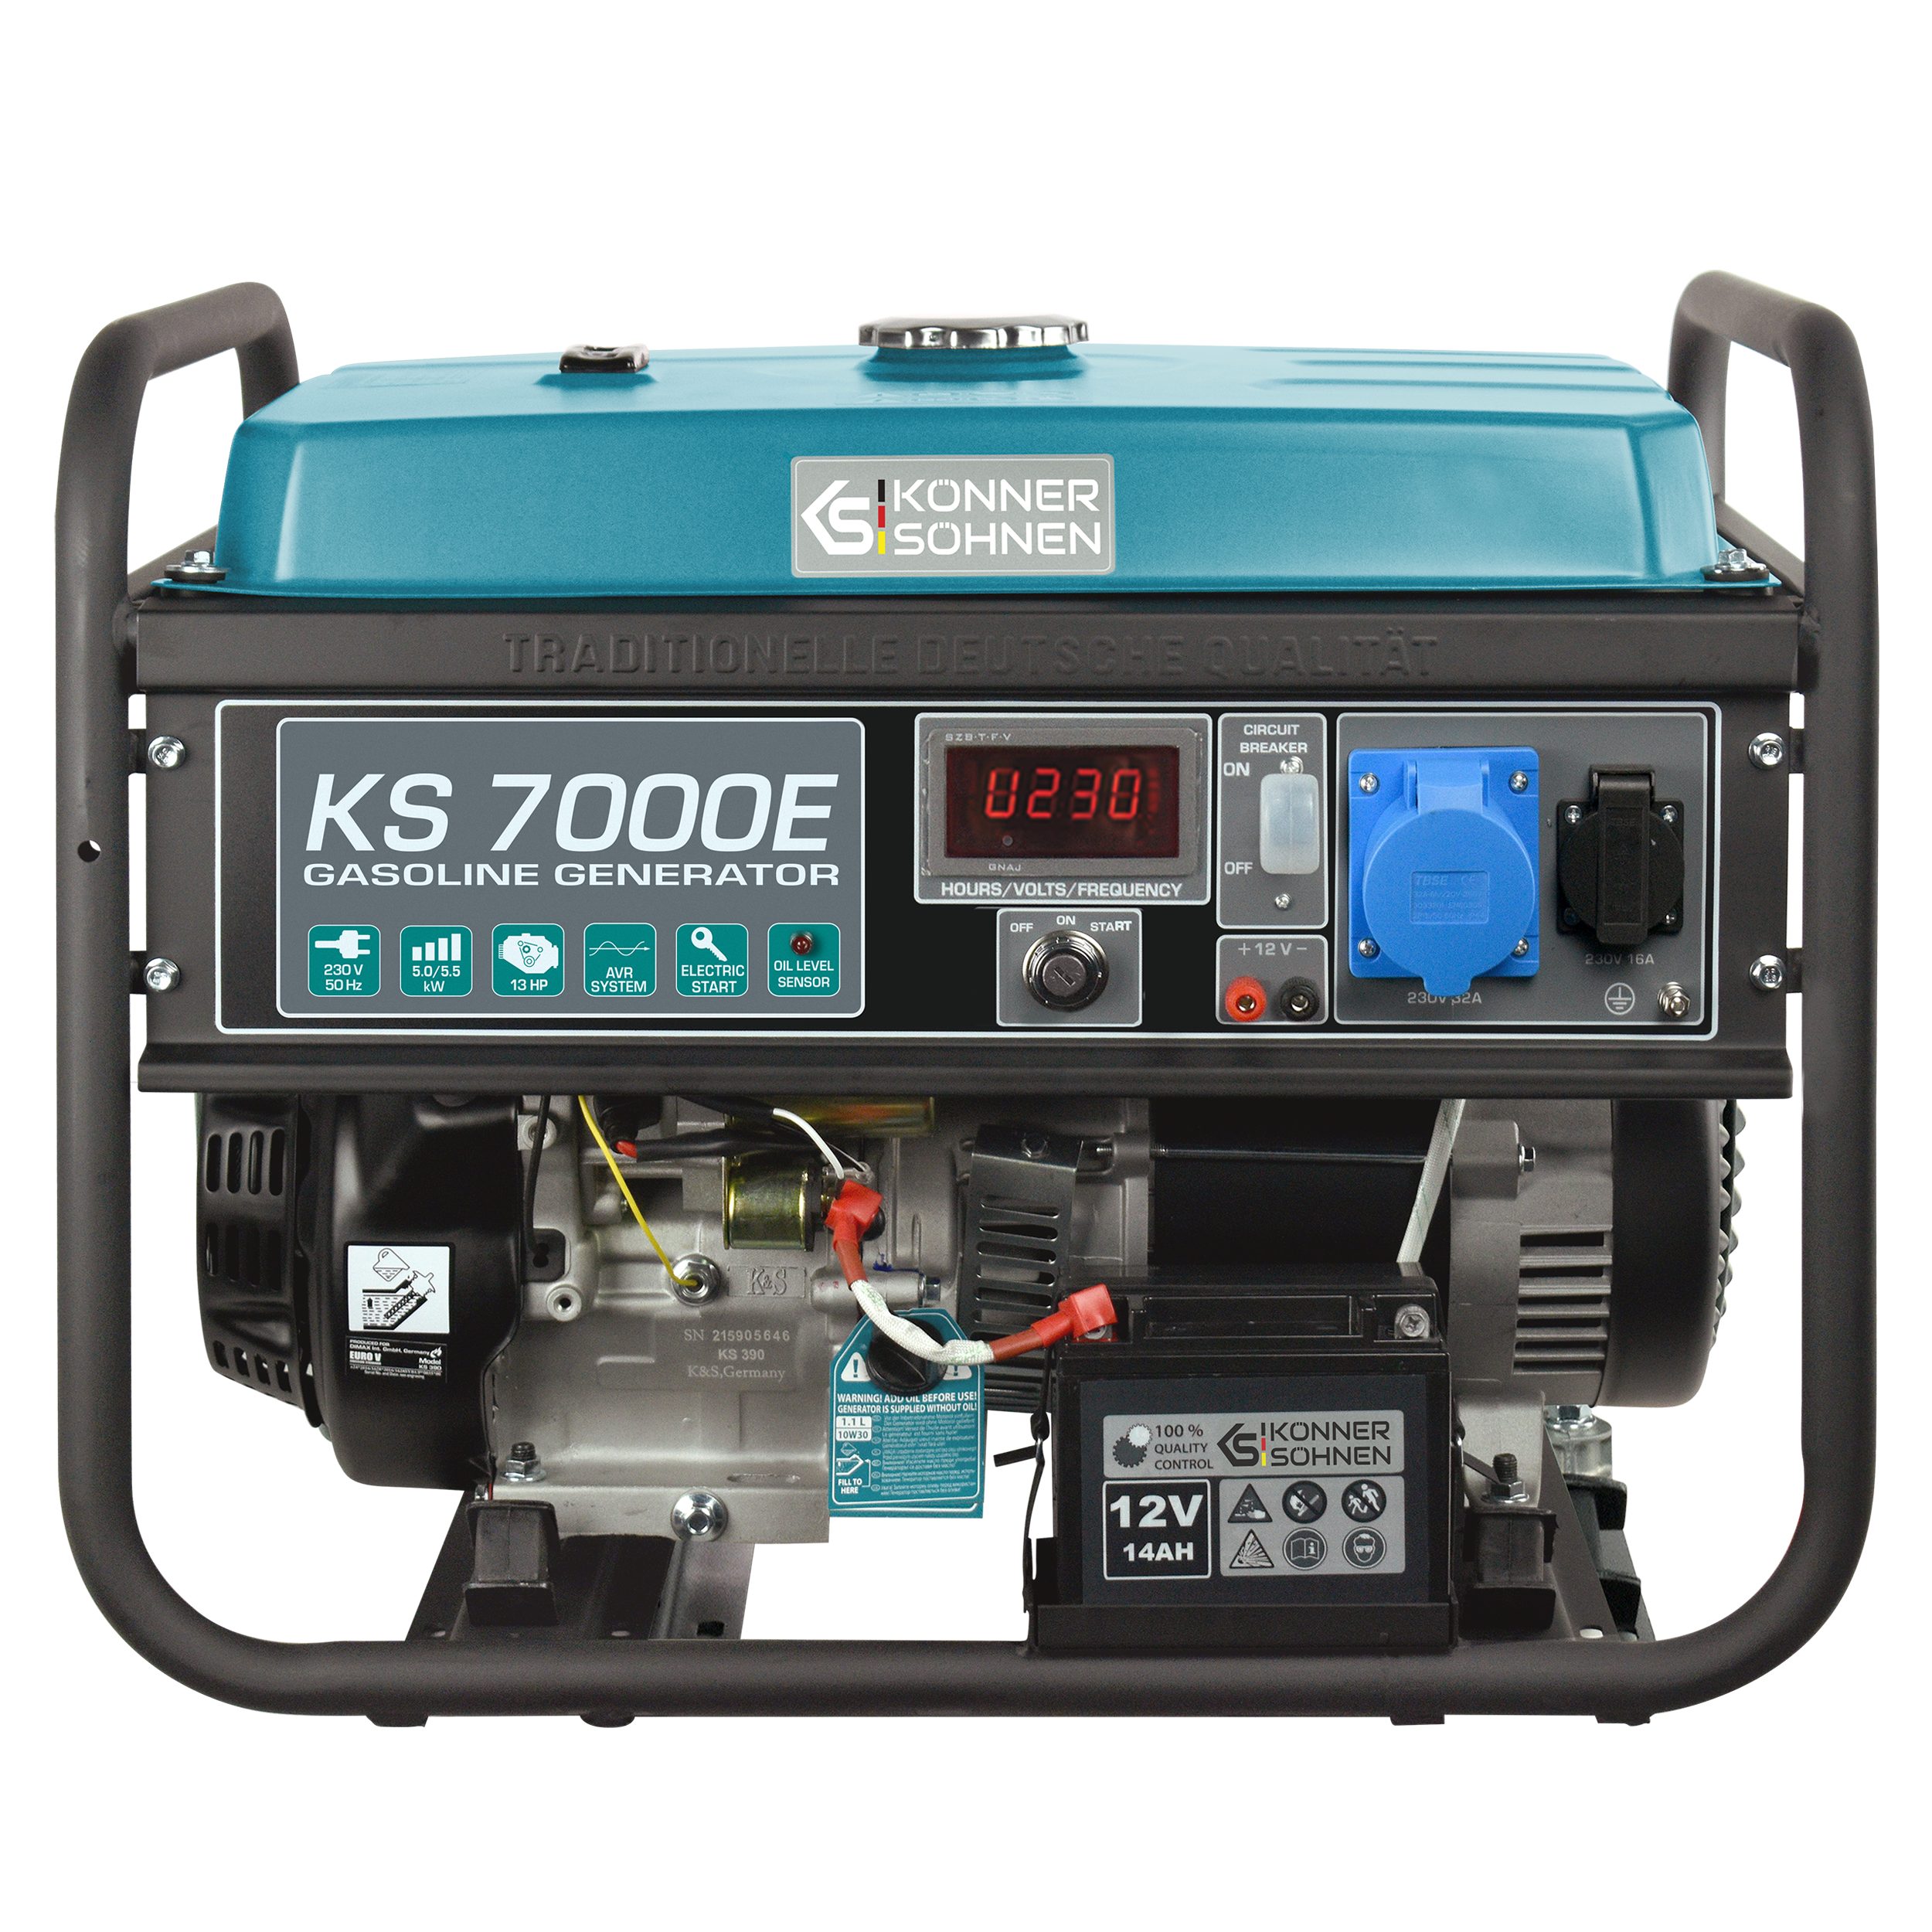 Könner & Söhnen Stromerzeuger KS 7000E, 5,50 in kW, (Steckdosen 1x16A (230V), 1x32A (230V), 1-tlg., 4-Takt Benzinmotor, Kupfer, E-Start, 5500 Watt), Automatischer Spannungsregler, Anzeige (Volt, Hz)